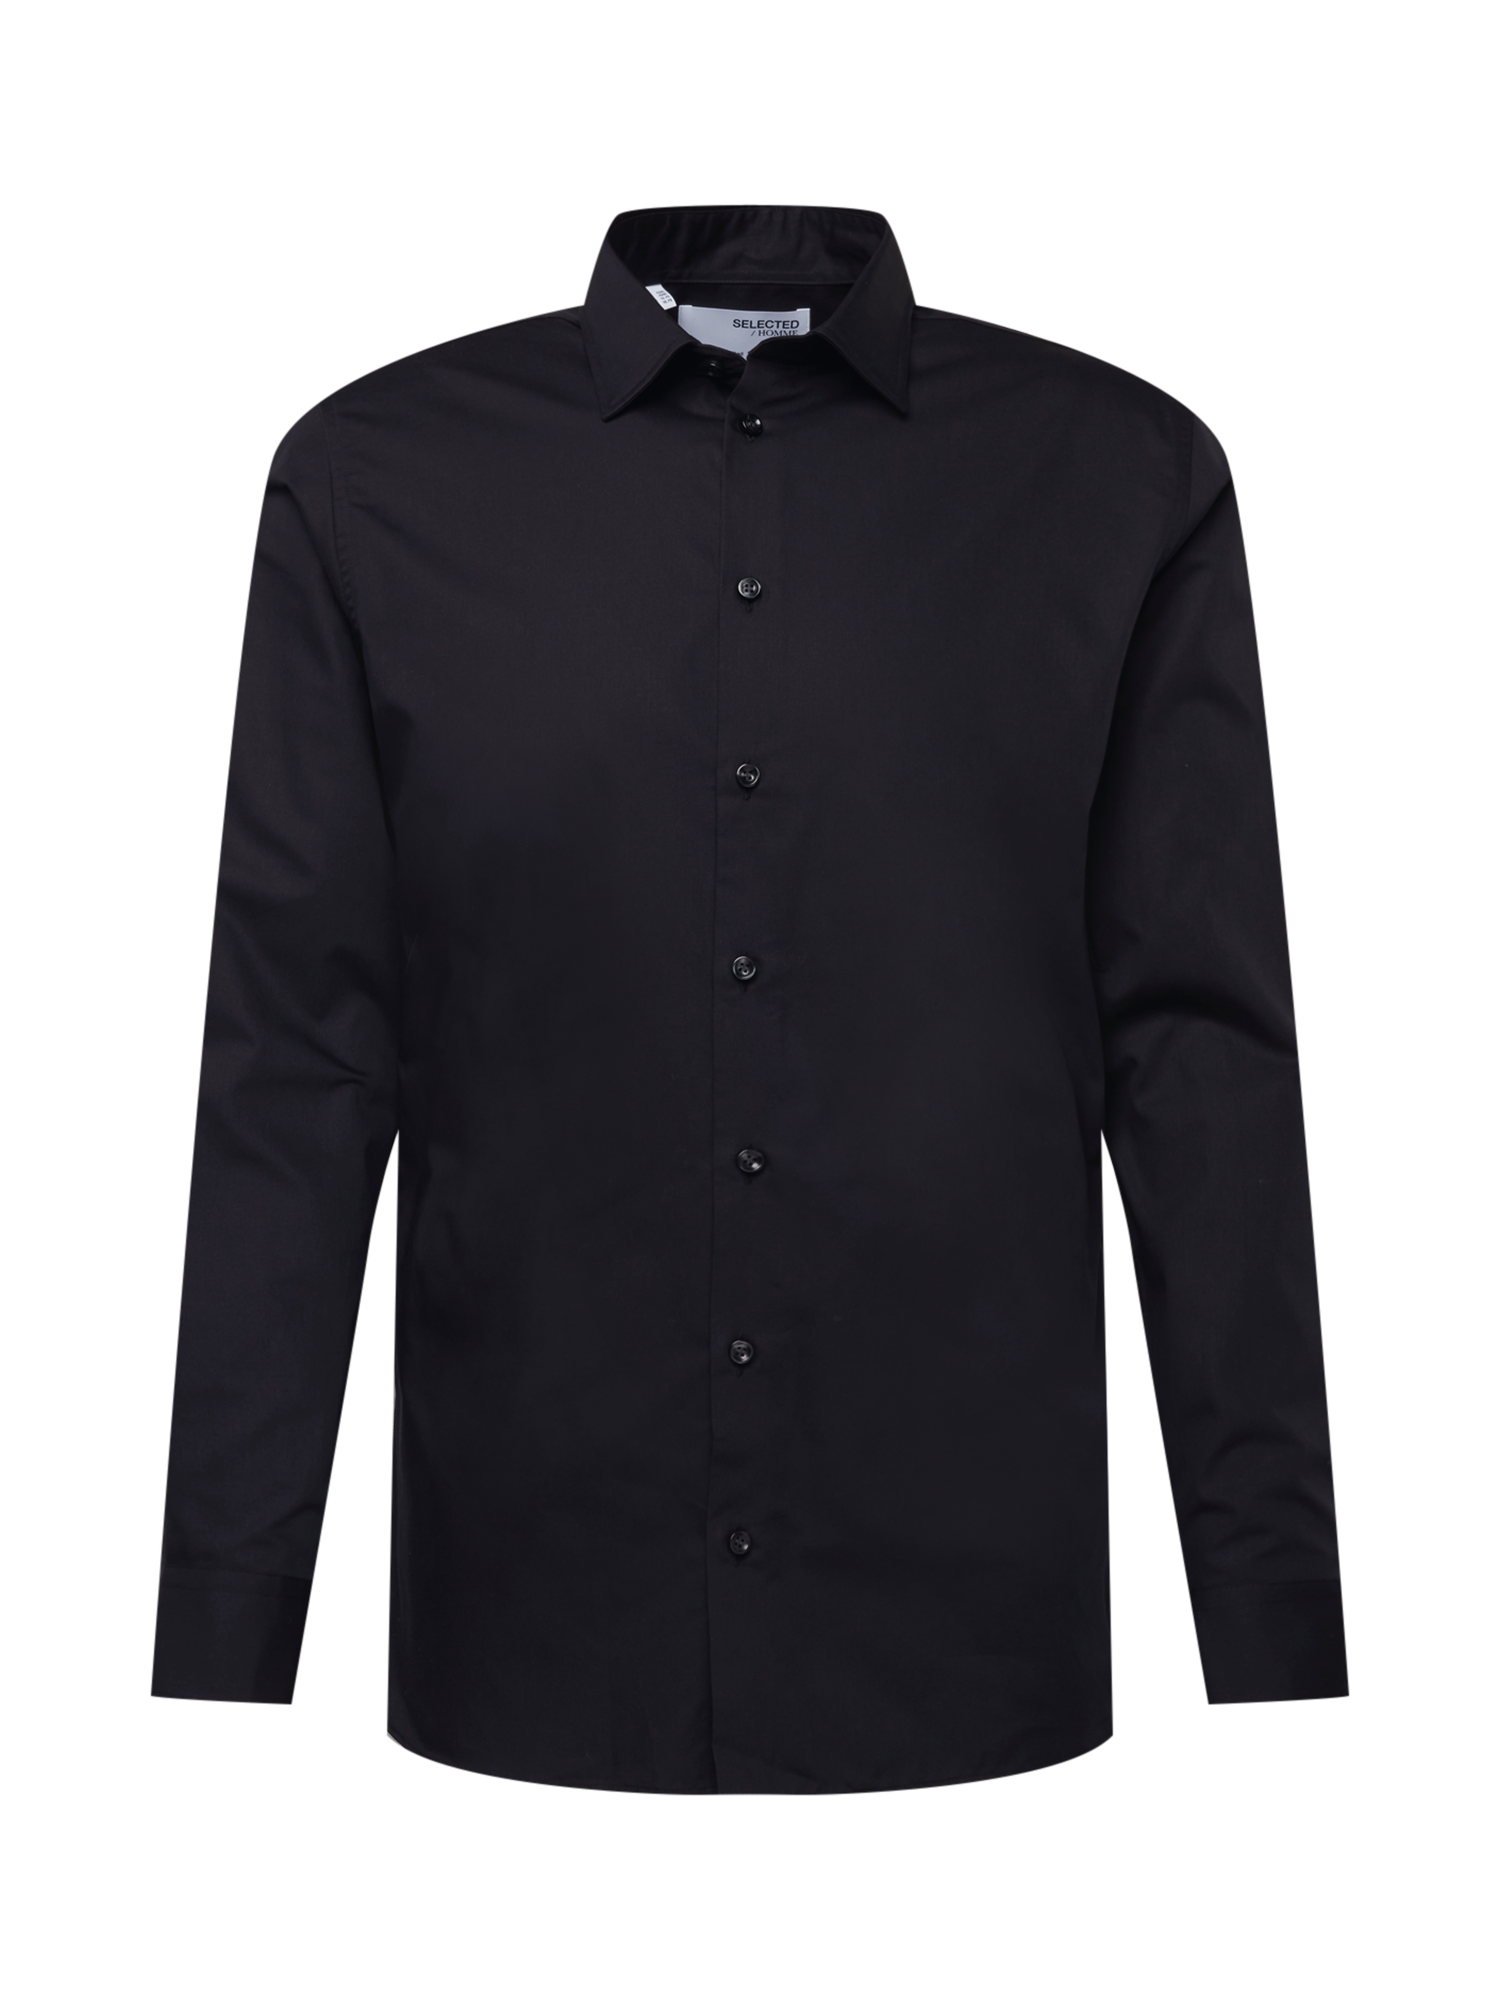 Koszule Odzież SELECTED HOMME Koszula Ethan w kolorze Czarnym 